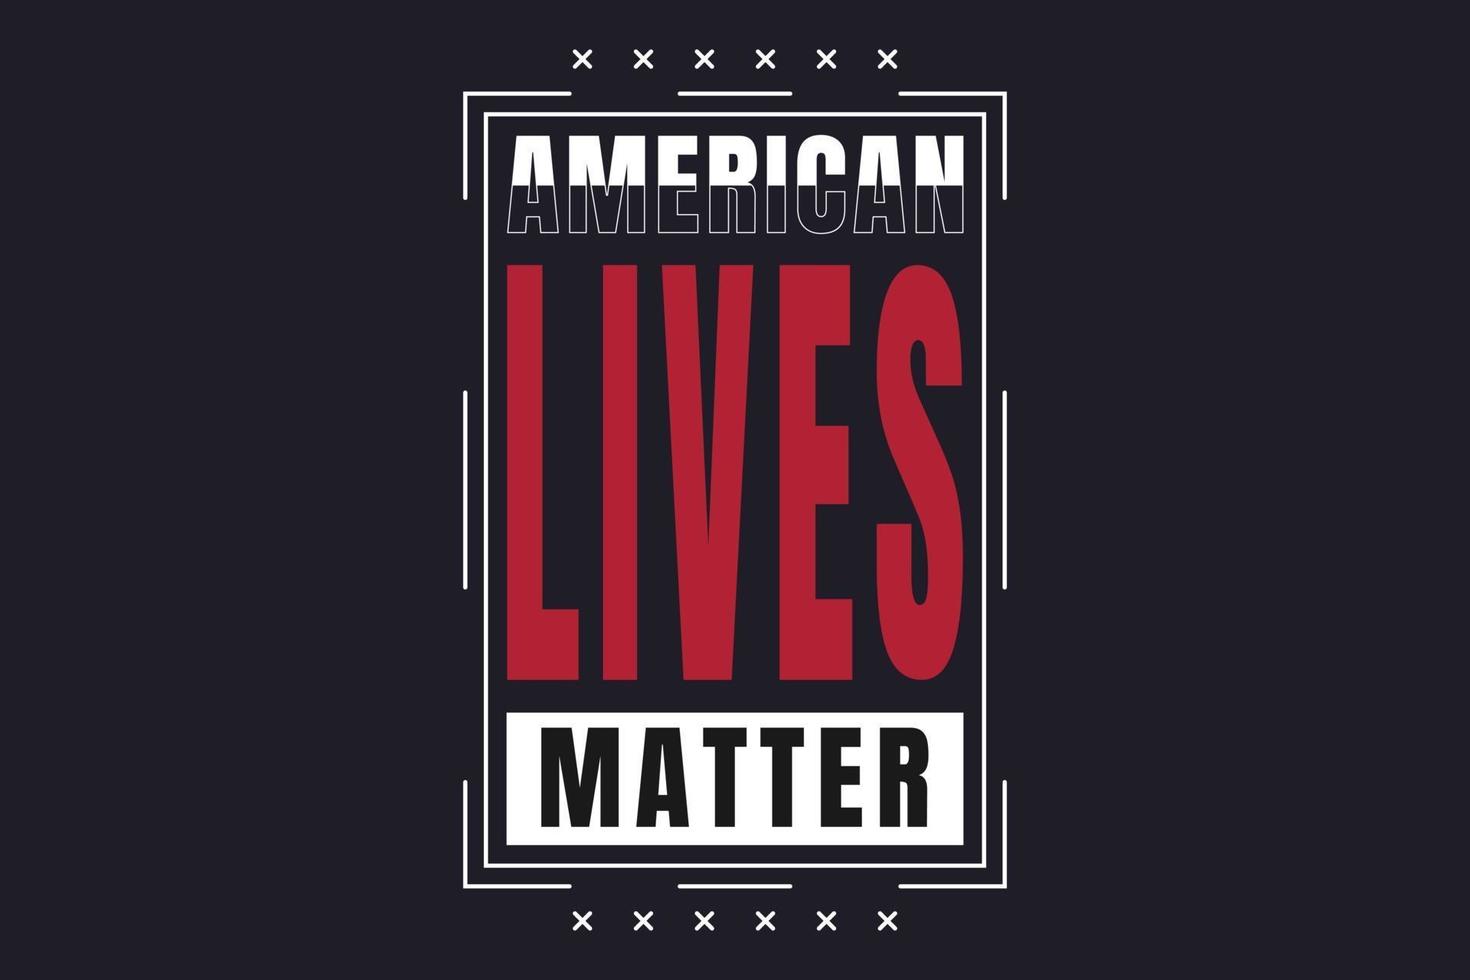 las vidas americanas importan, texto de tipografía de camiseta vector